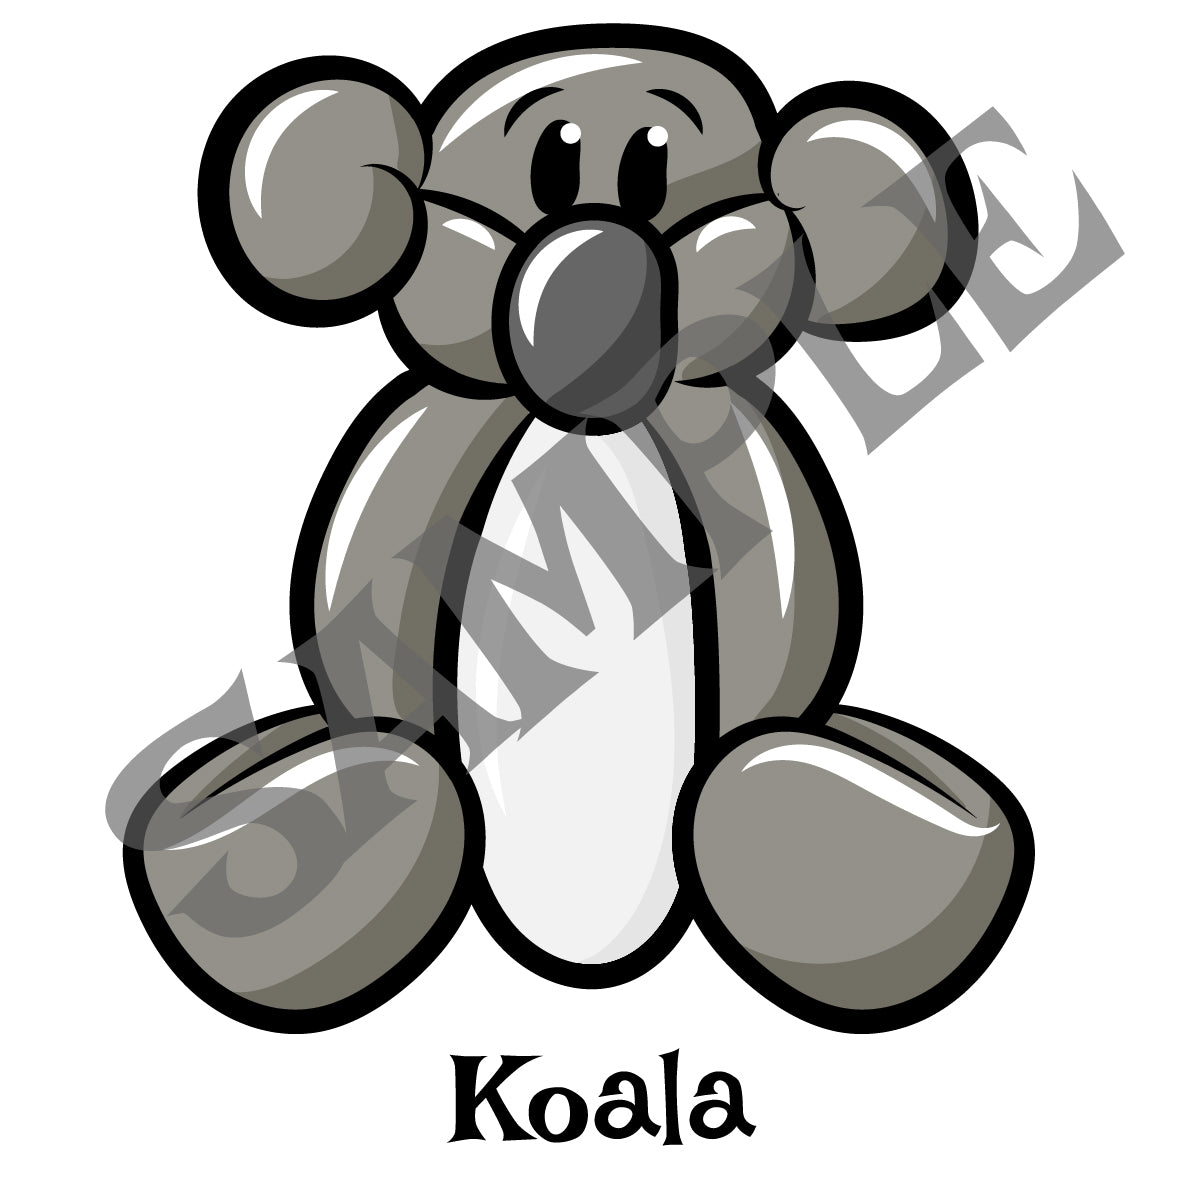 koala balloon animal twister sister studios twister sister balloon animal clothing and accessories